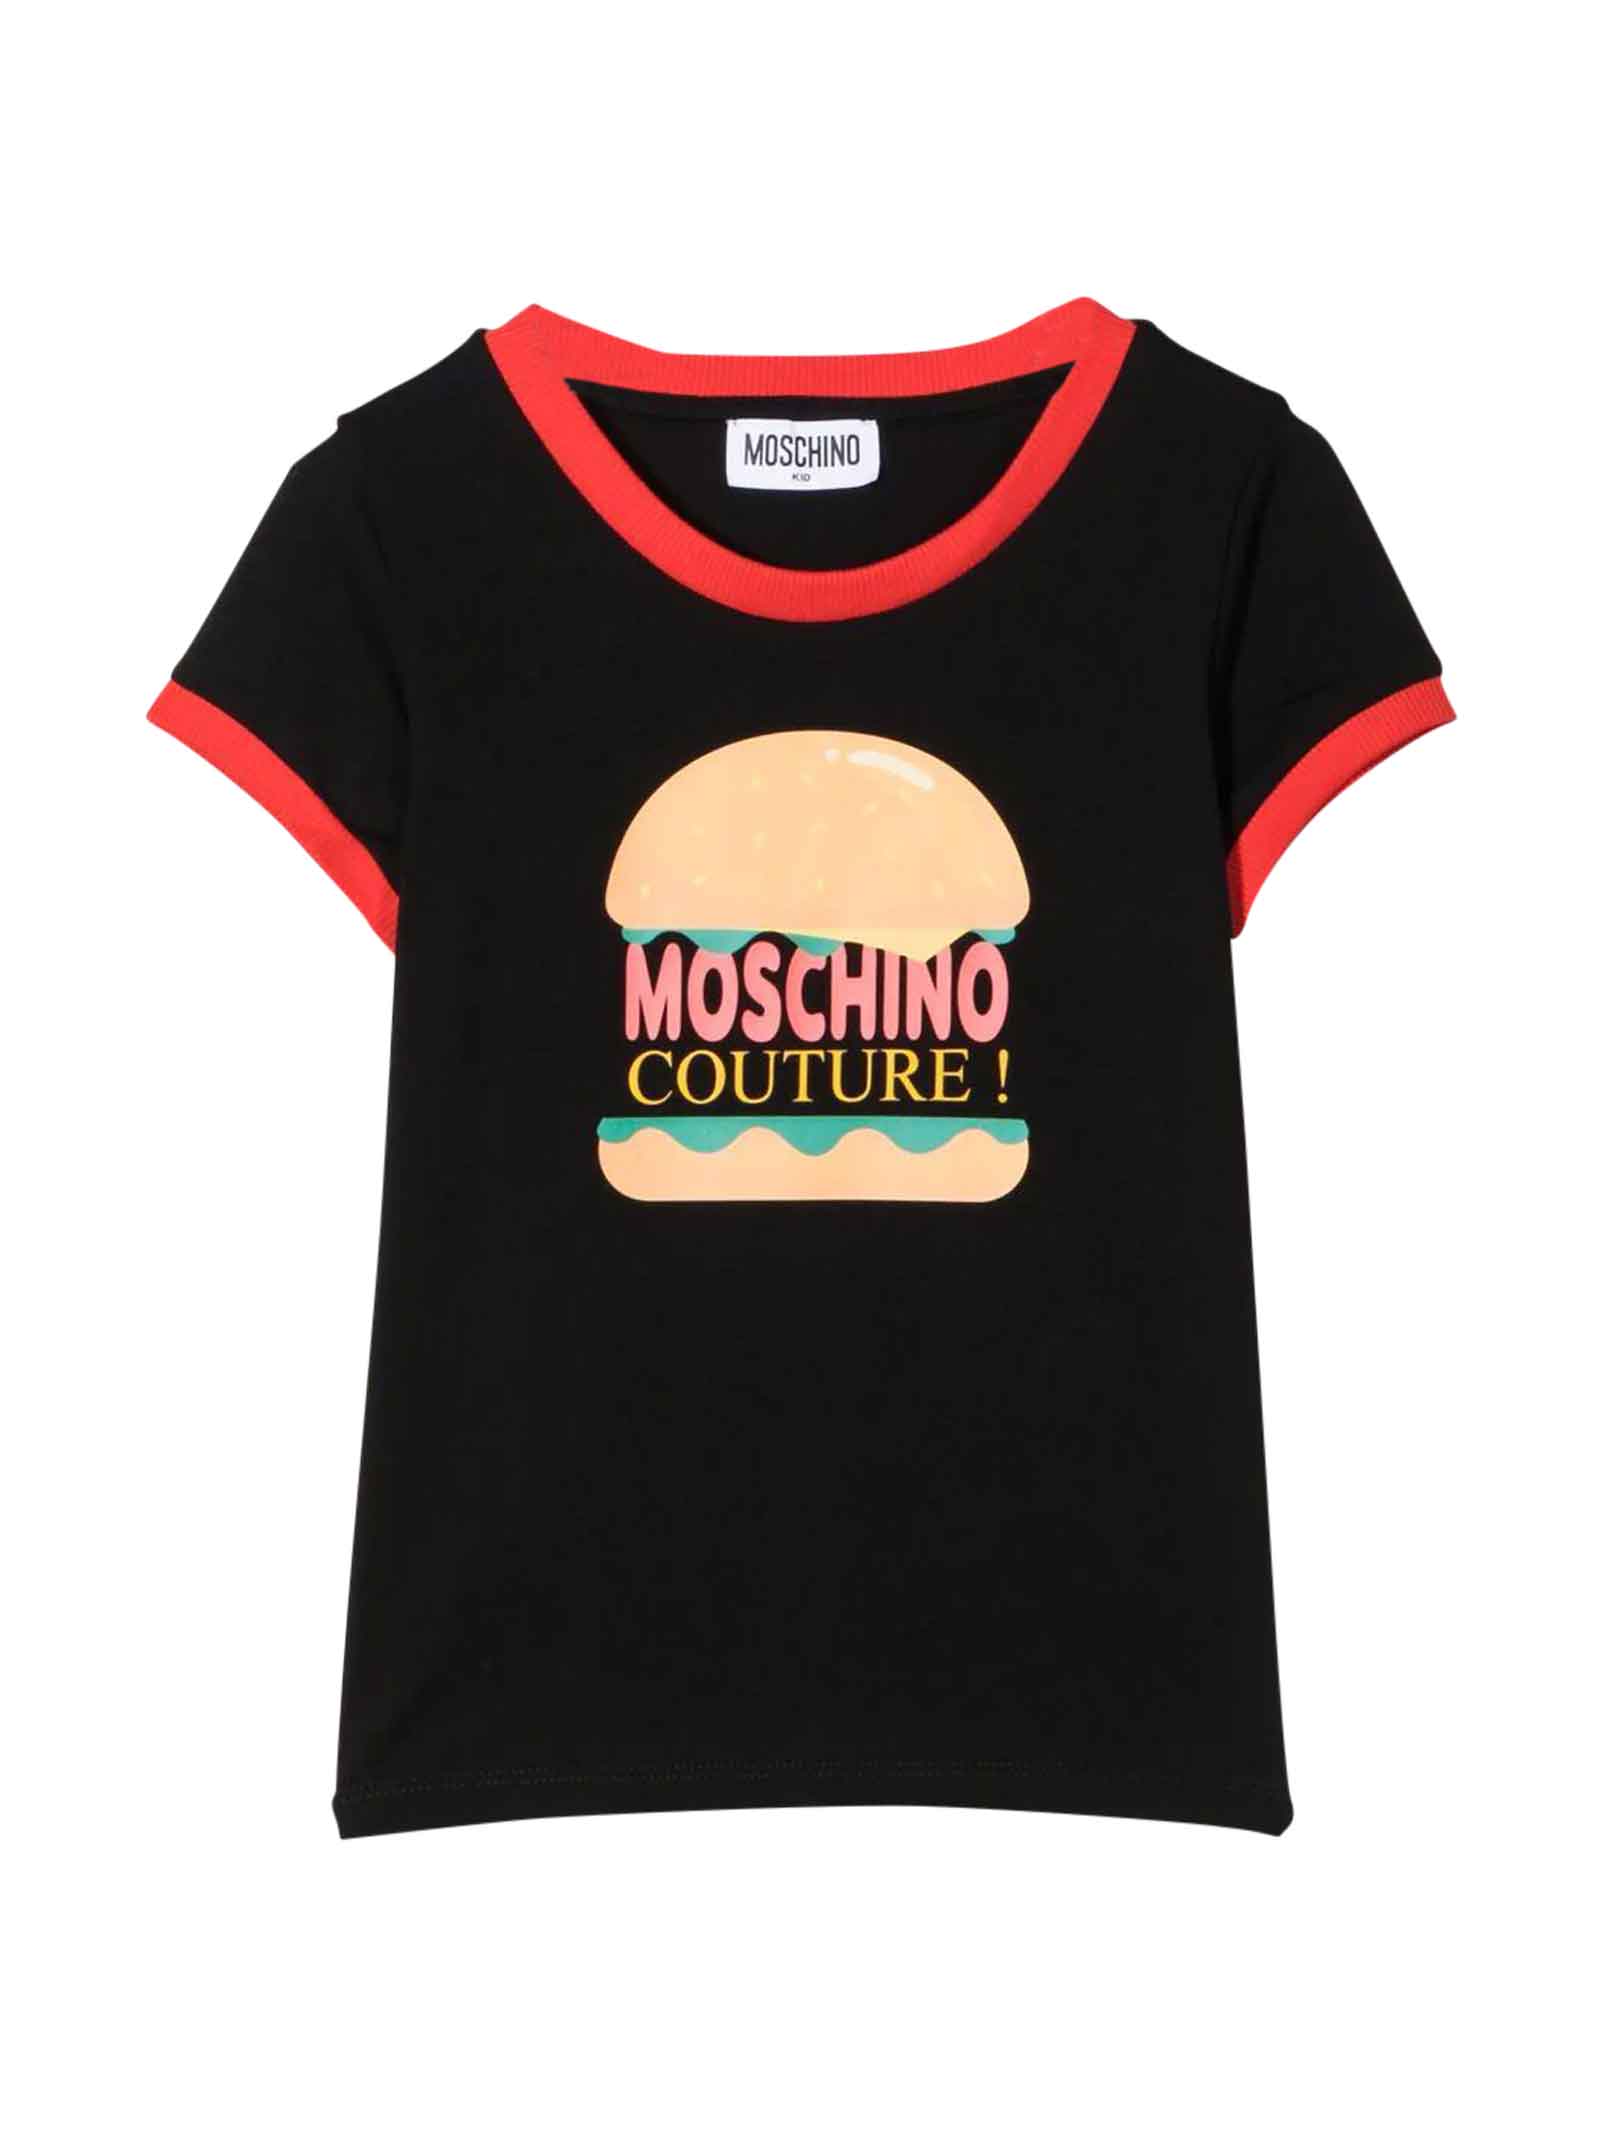 Moschino T-shirt Nera Unisex